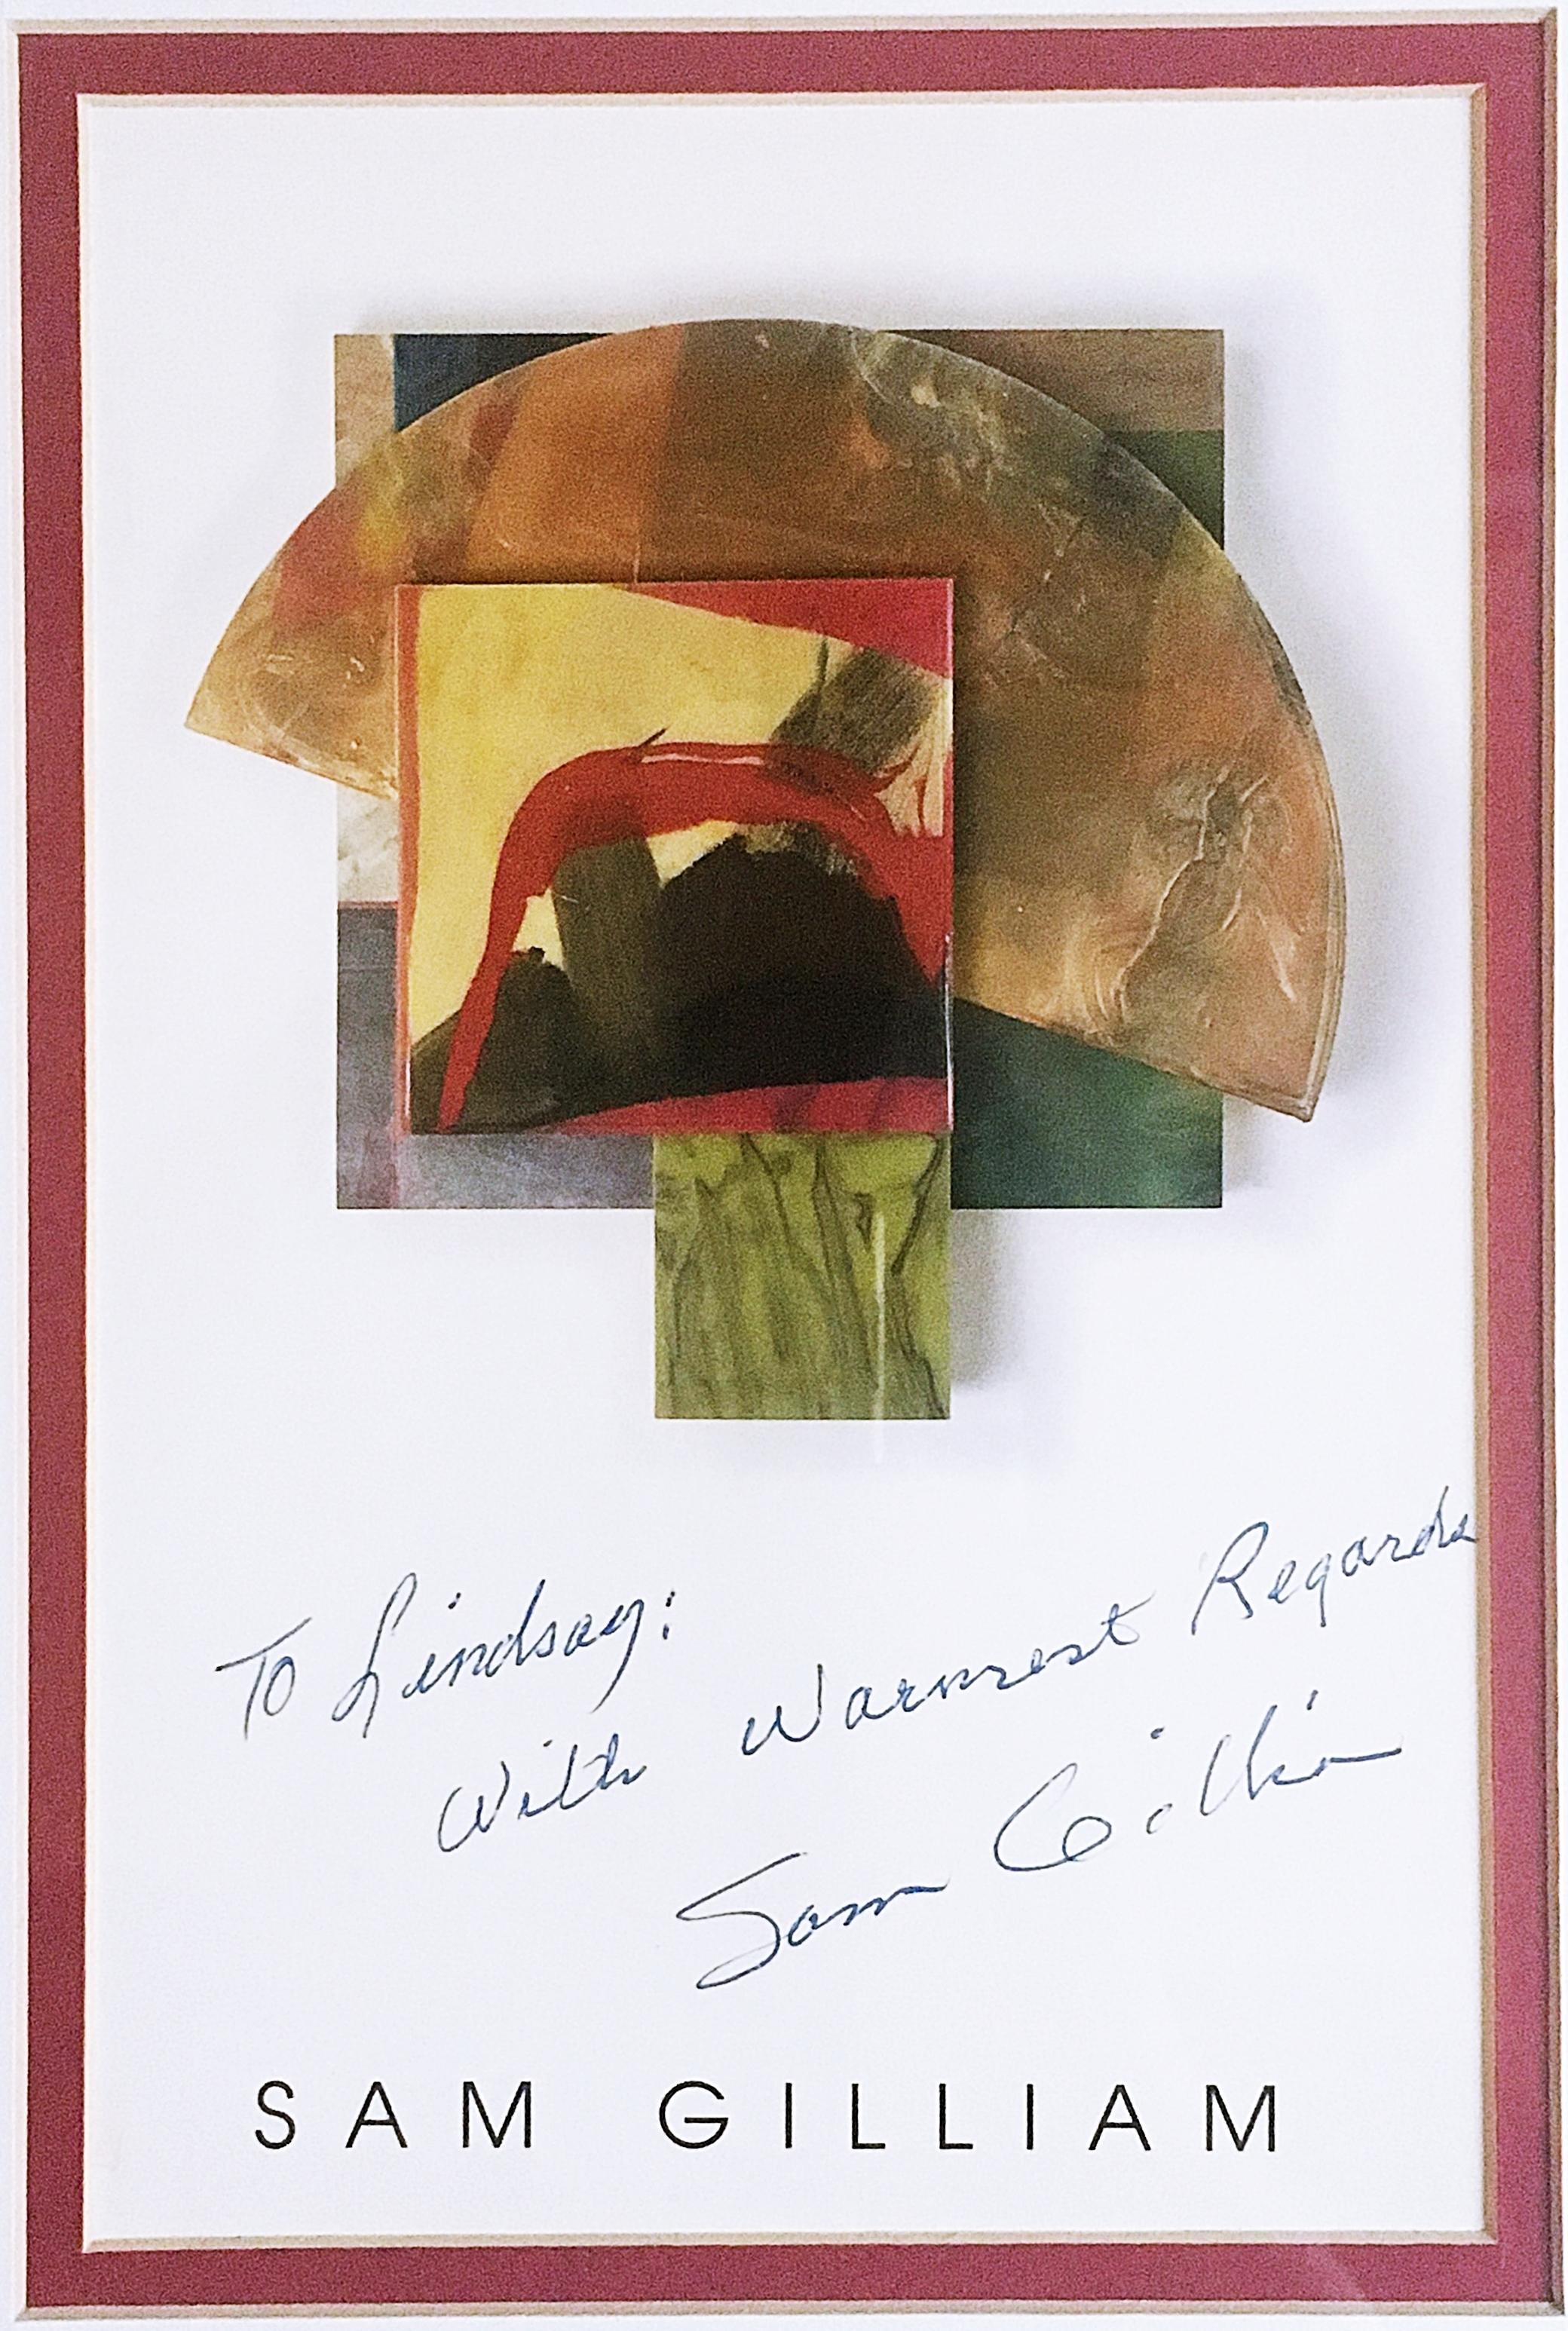 Sam Gilliam
Offsetlithographie mit herzlicher Widmung an einen bekannten afroamerikanischen Kunstpädagogen, 1988
Offset-Lithographie-Karte
Handgeschriebene, signierte und beschriftete Karte mit einer herzlichen persönlichen Botschaft des